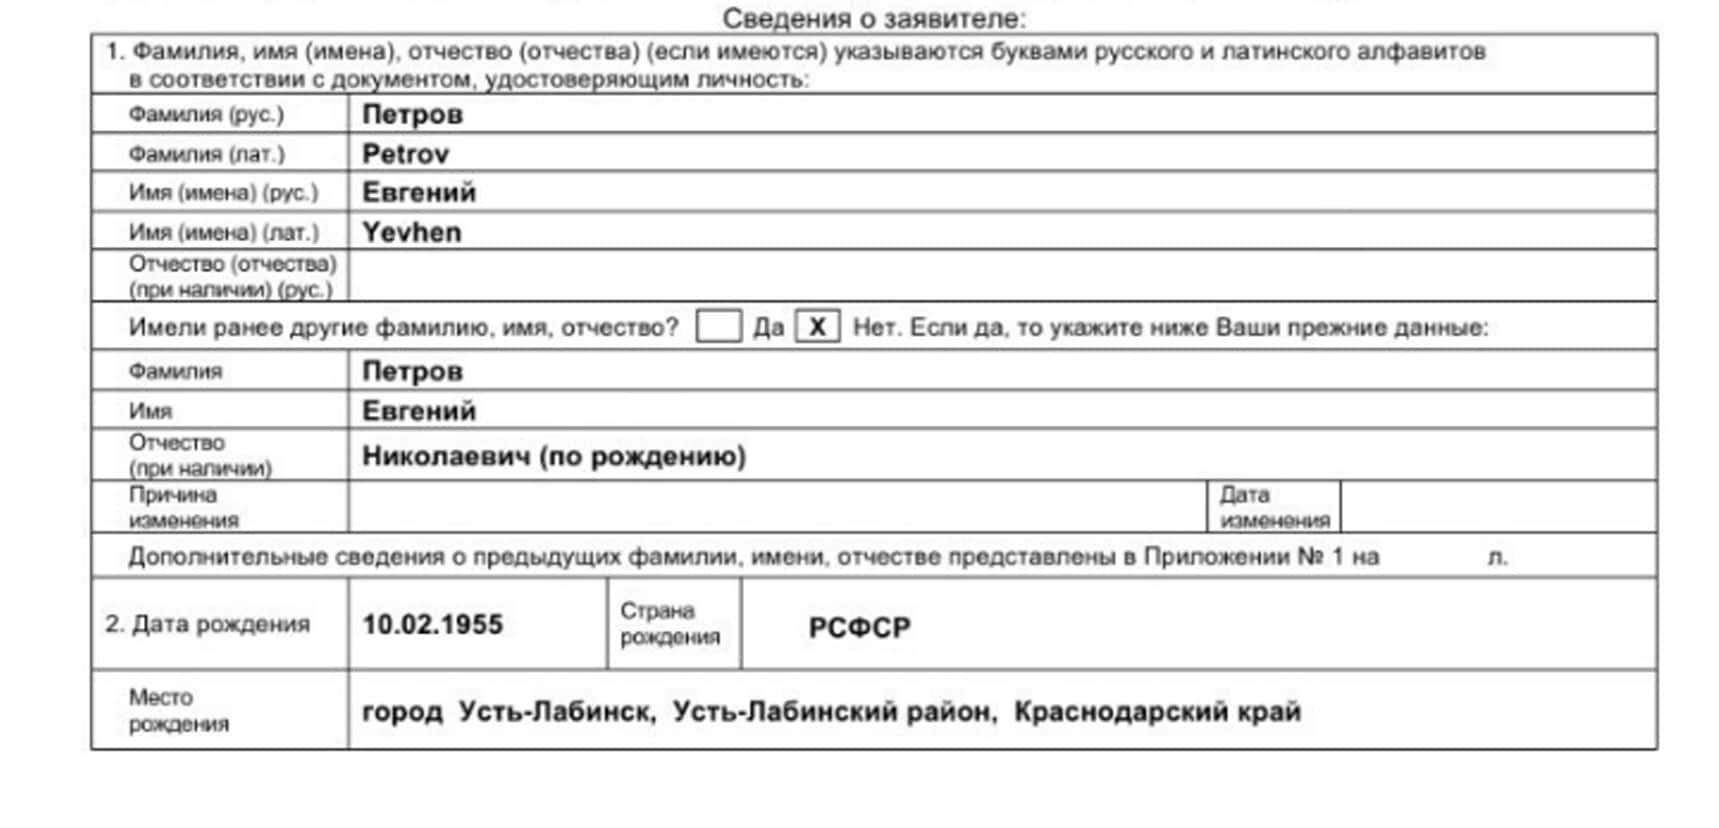 Как получить внж в болгарии россиянину: основания, необходимые документы